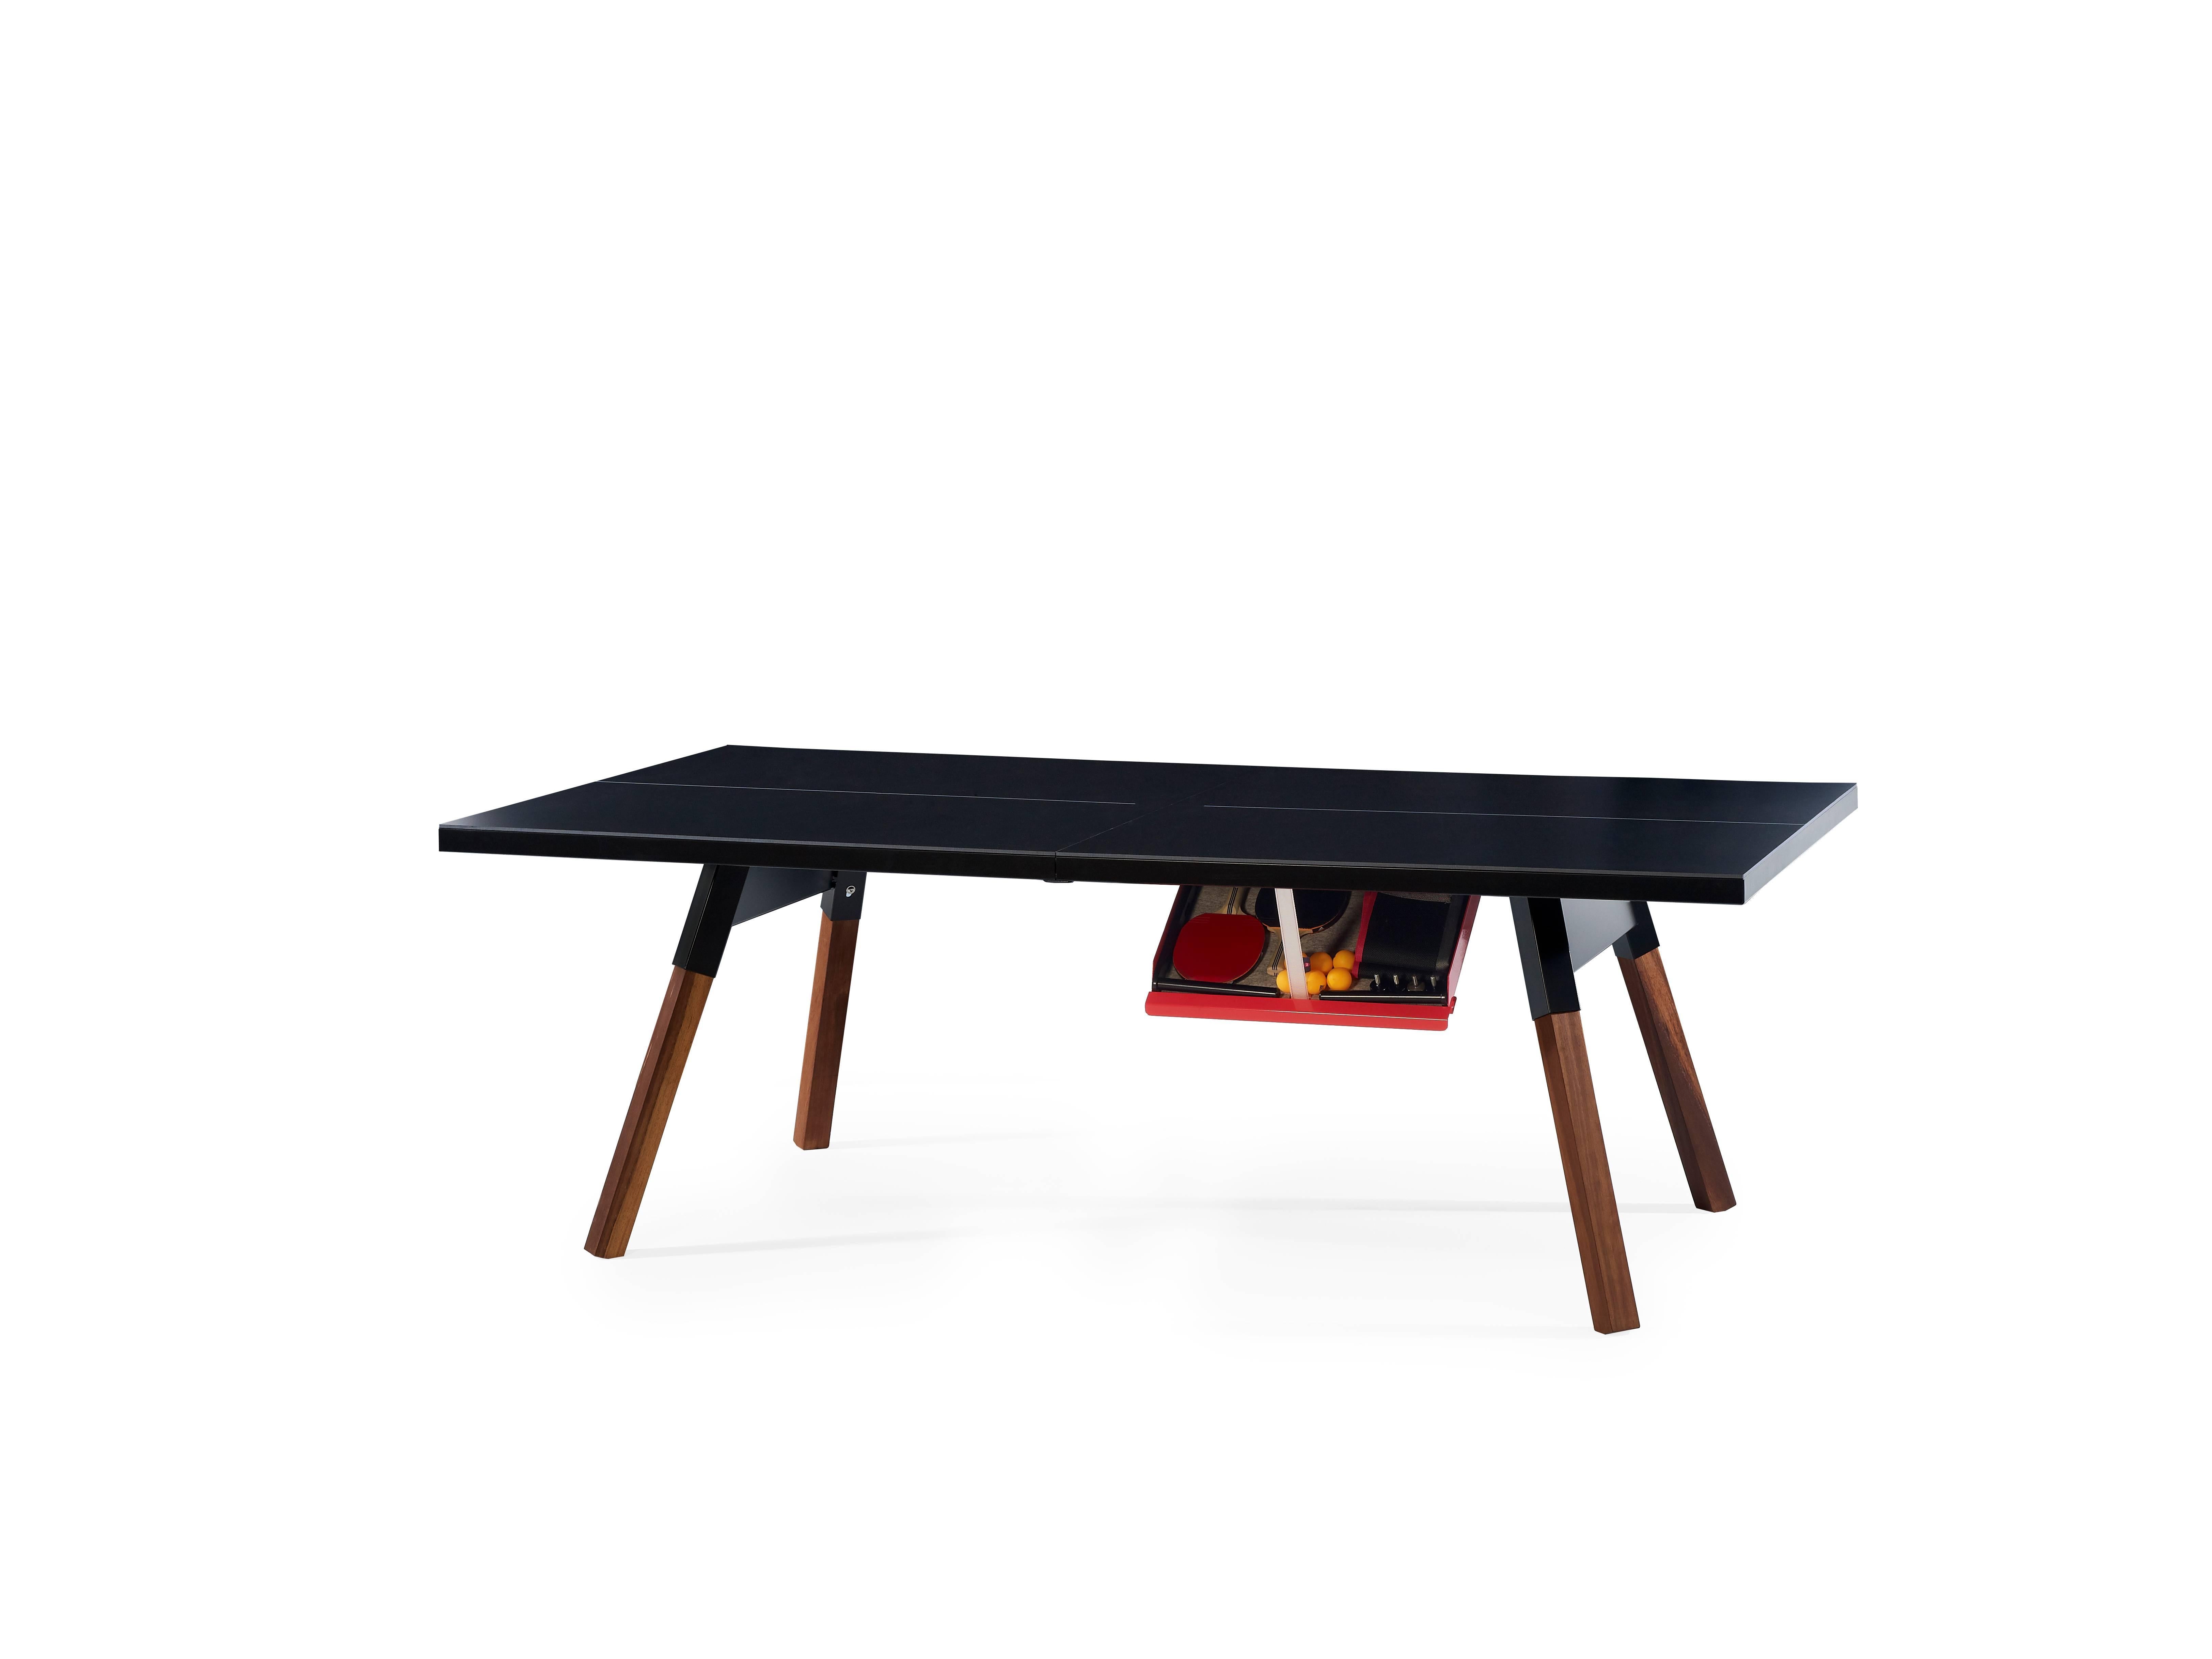 You and Me Medium ist ein Tischtennistisch mit kleineren Abmessungen für kleinere Räume, einer Spielfläche, einem Design und einer Struktur, die volle Spielbarkeit bietet. Bei Nichtgebrauch werden alle Sportelemente - das Netz, die Schläger und die